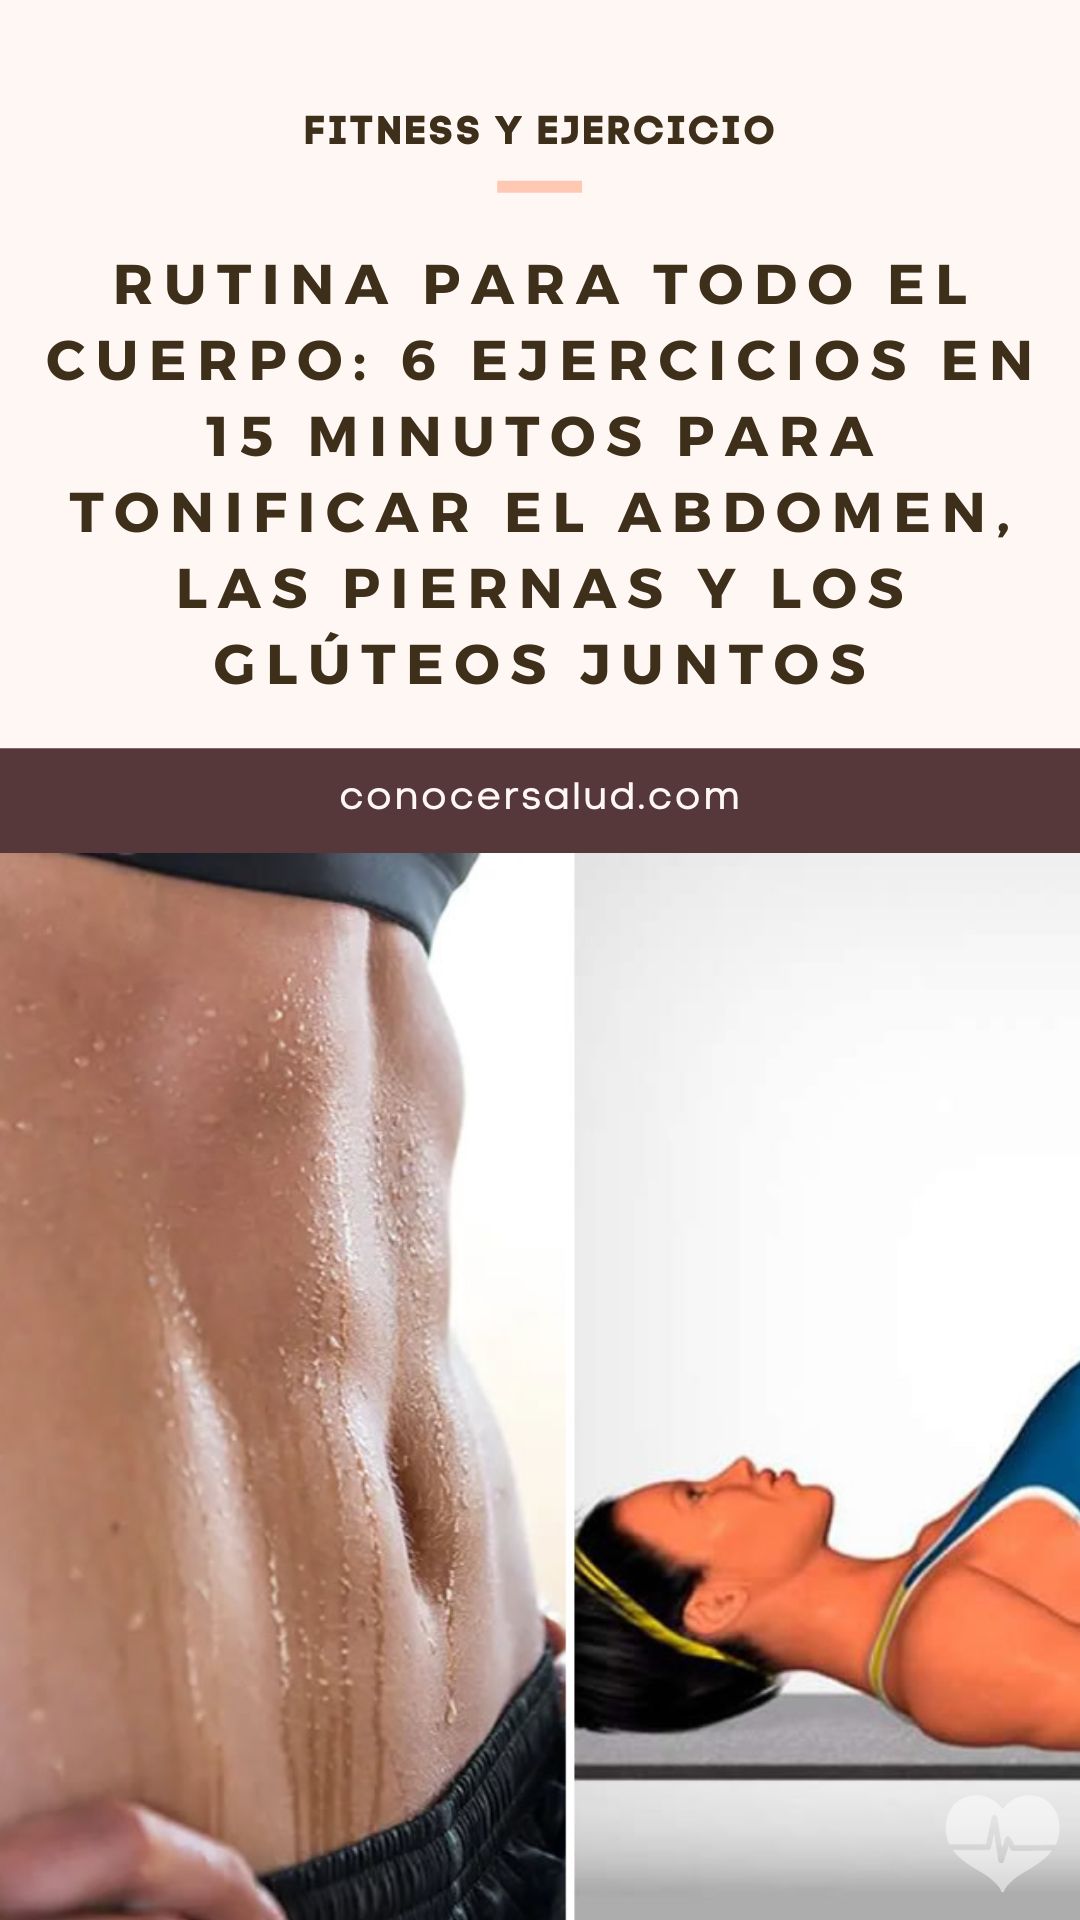 Rutina para todo el cuerpo: 6 ejercicios en 15 minutos para tonificar el abdomen, las piernas y los glúteos juntos